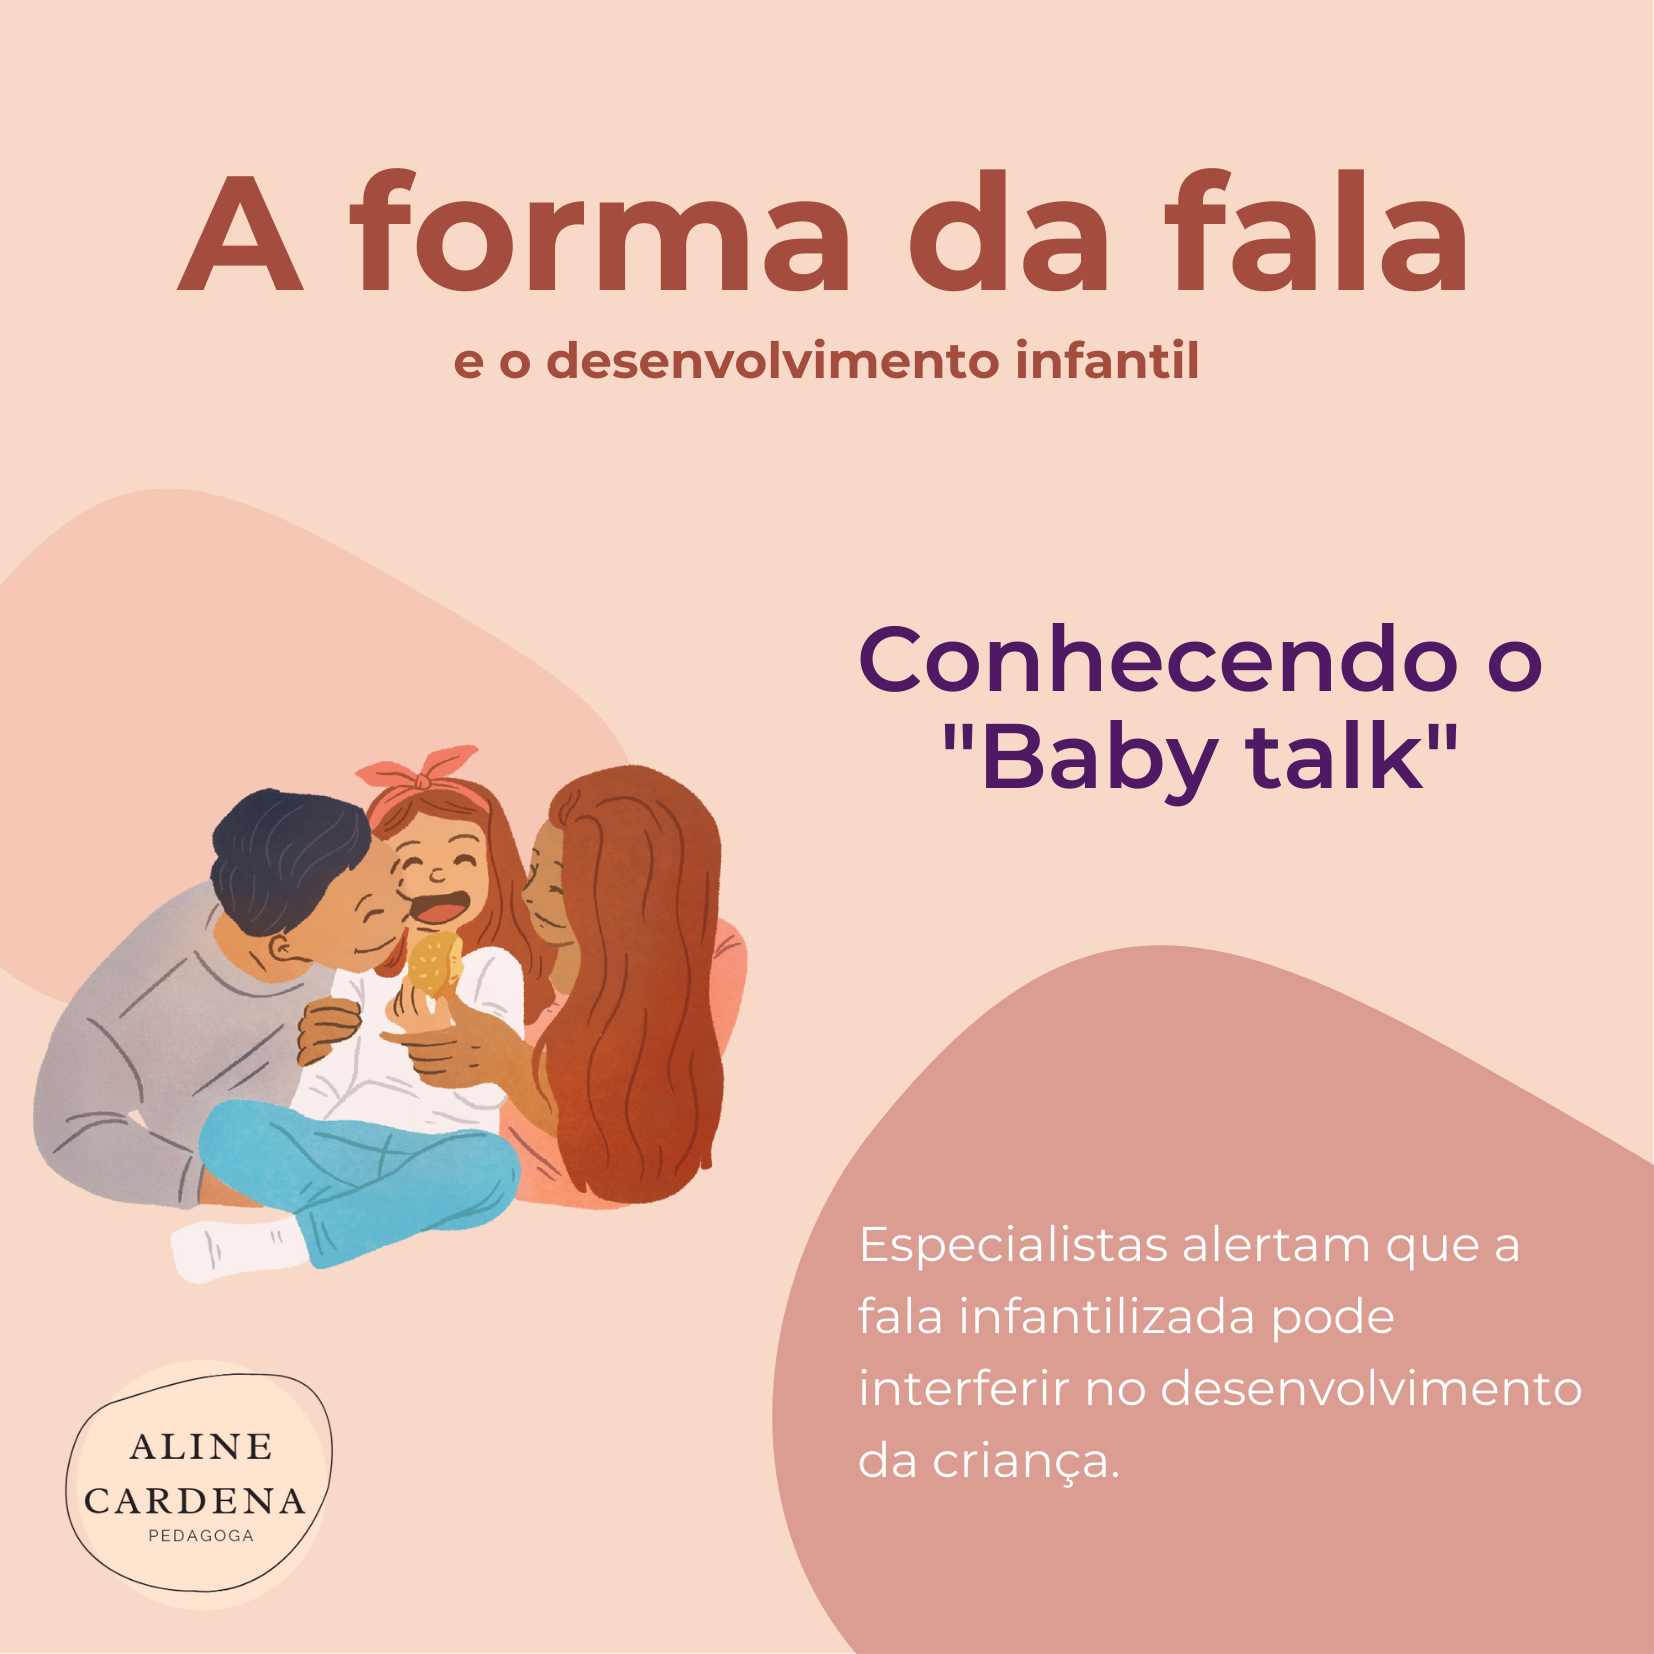 A forma da fala

e o desenvolvimento infantil

Conhecendo o
"Baby talk"

 

Especialistas alertam que a

fala infantilizada pode
interferir no desenvolvimento
da crianga.